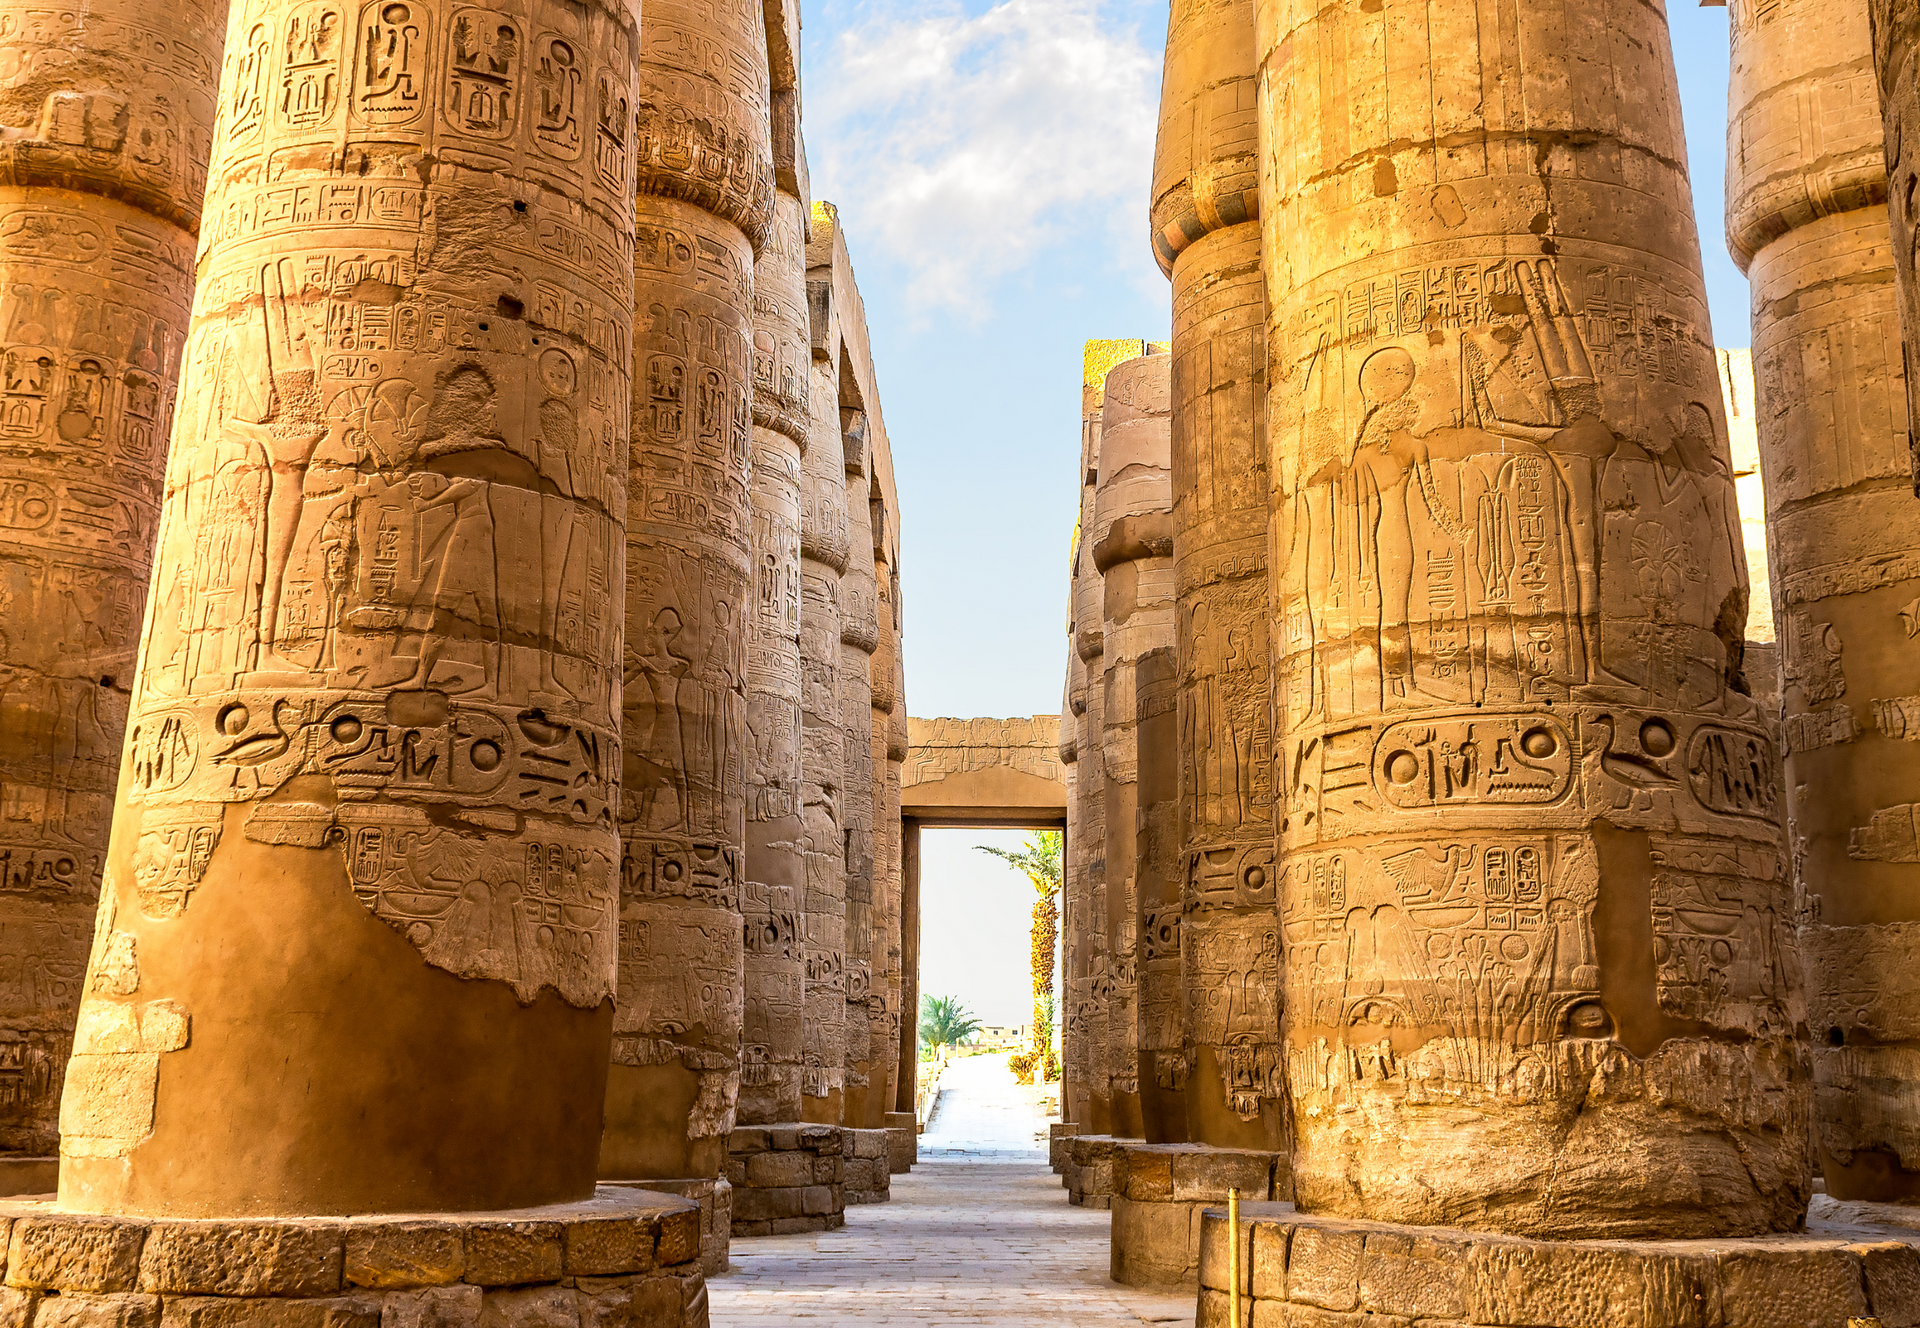 Karnak temple, nile cruise, egypt, Egypt Nile Cruises, Travel Agency Egypt, Nile River. Aswan Egypt, Luxor Egypt, Cruise Nile Egypt, Visit Egypt,